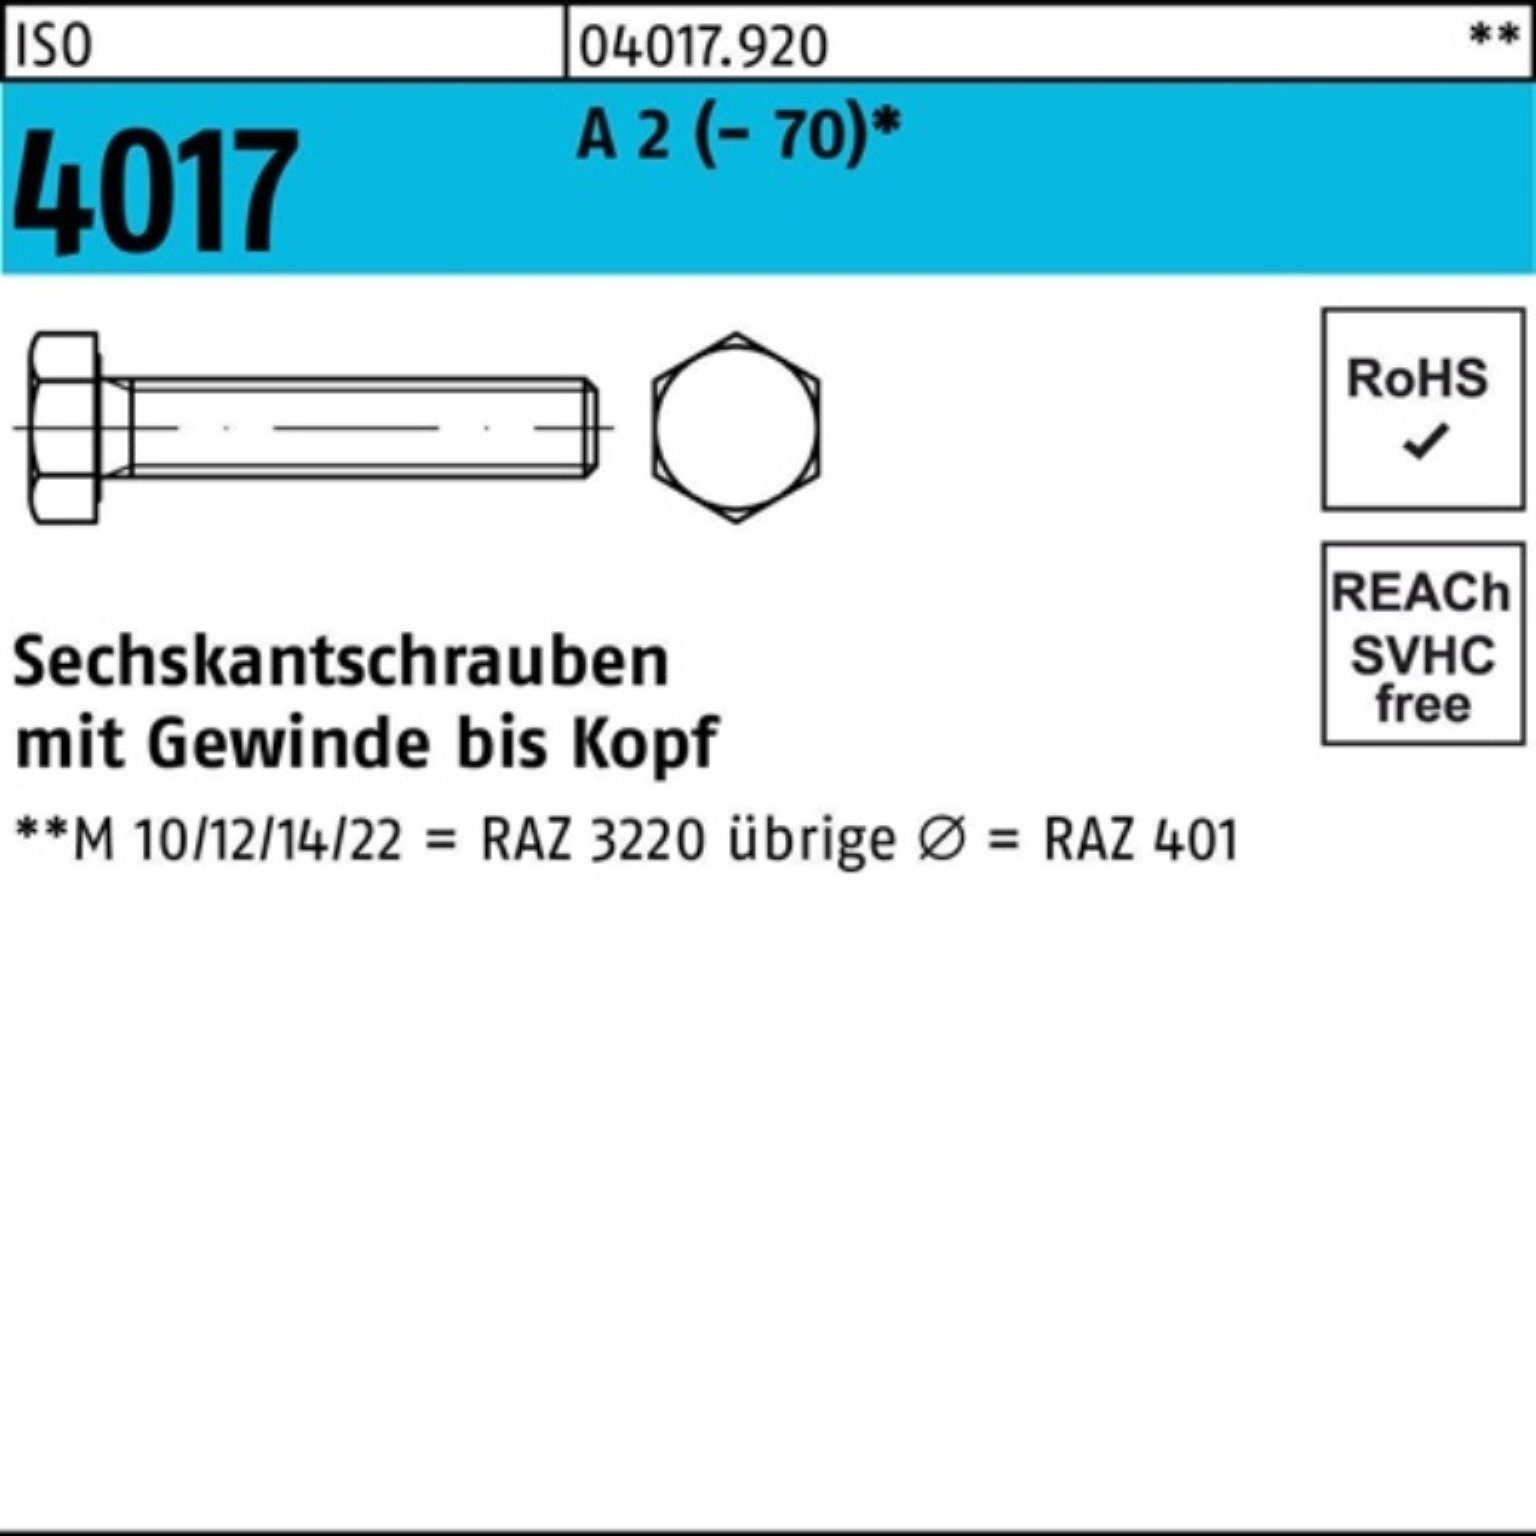 Bufab Sechskantschraube 100er 2 (70) 4017 A Sechskantschraube Pack 95 M20x Stück VG 10 ISO